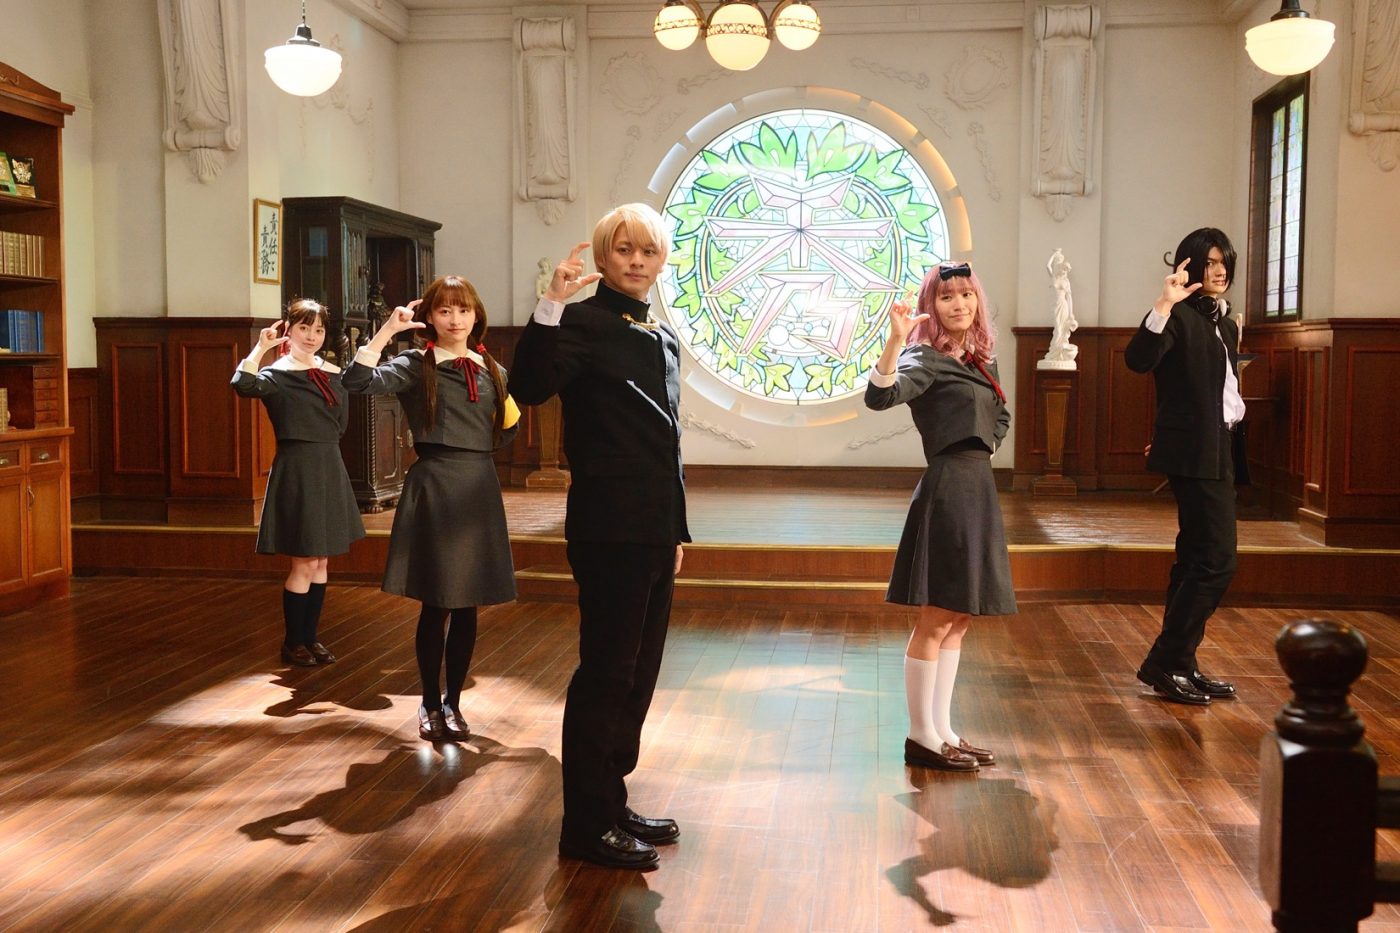 映画『かぐや様』より、平野紫耀率いる生徒会がダンスするエンドロールメイキング映像公開